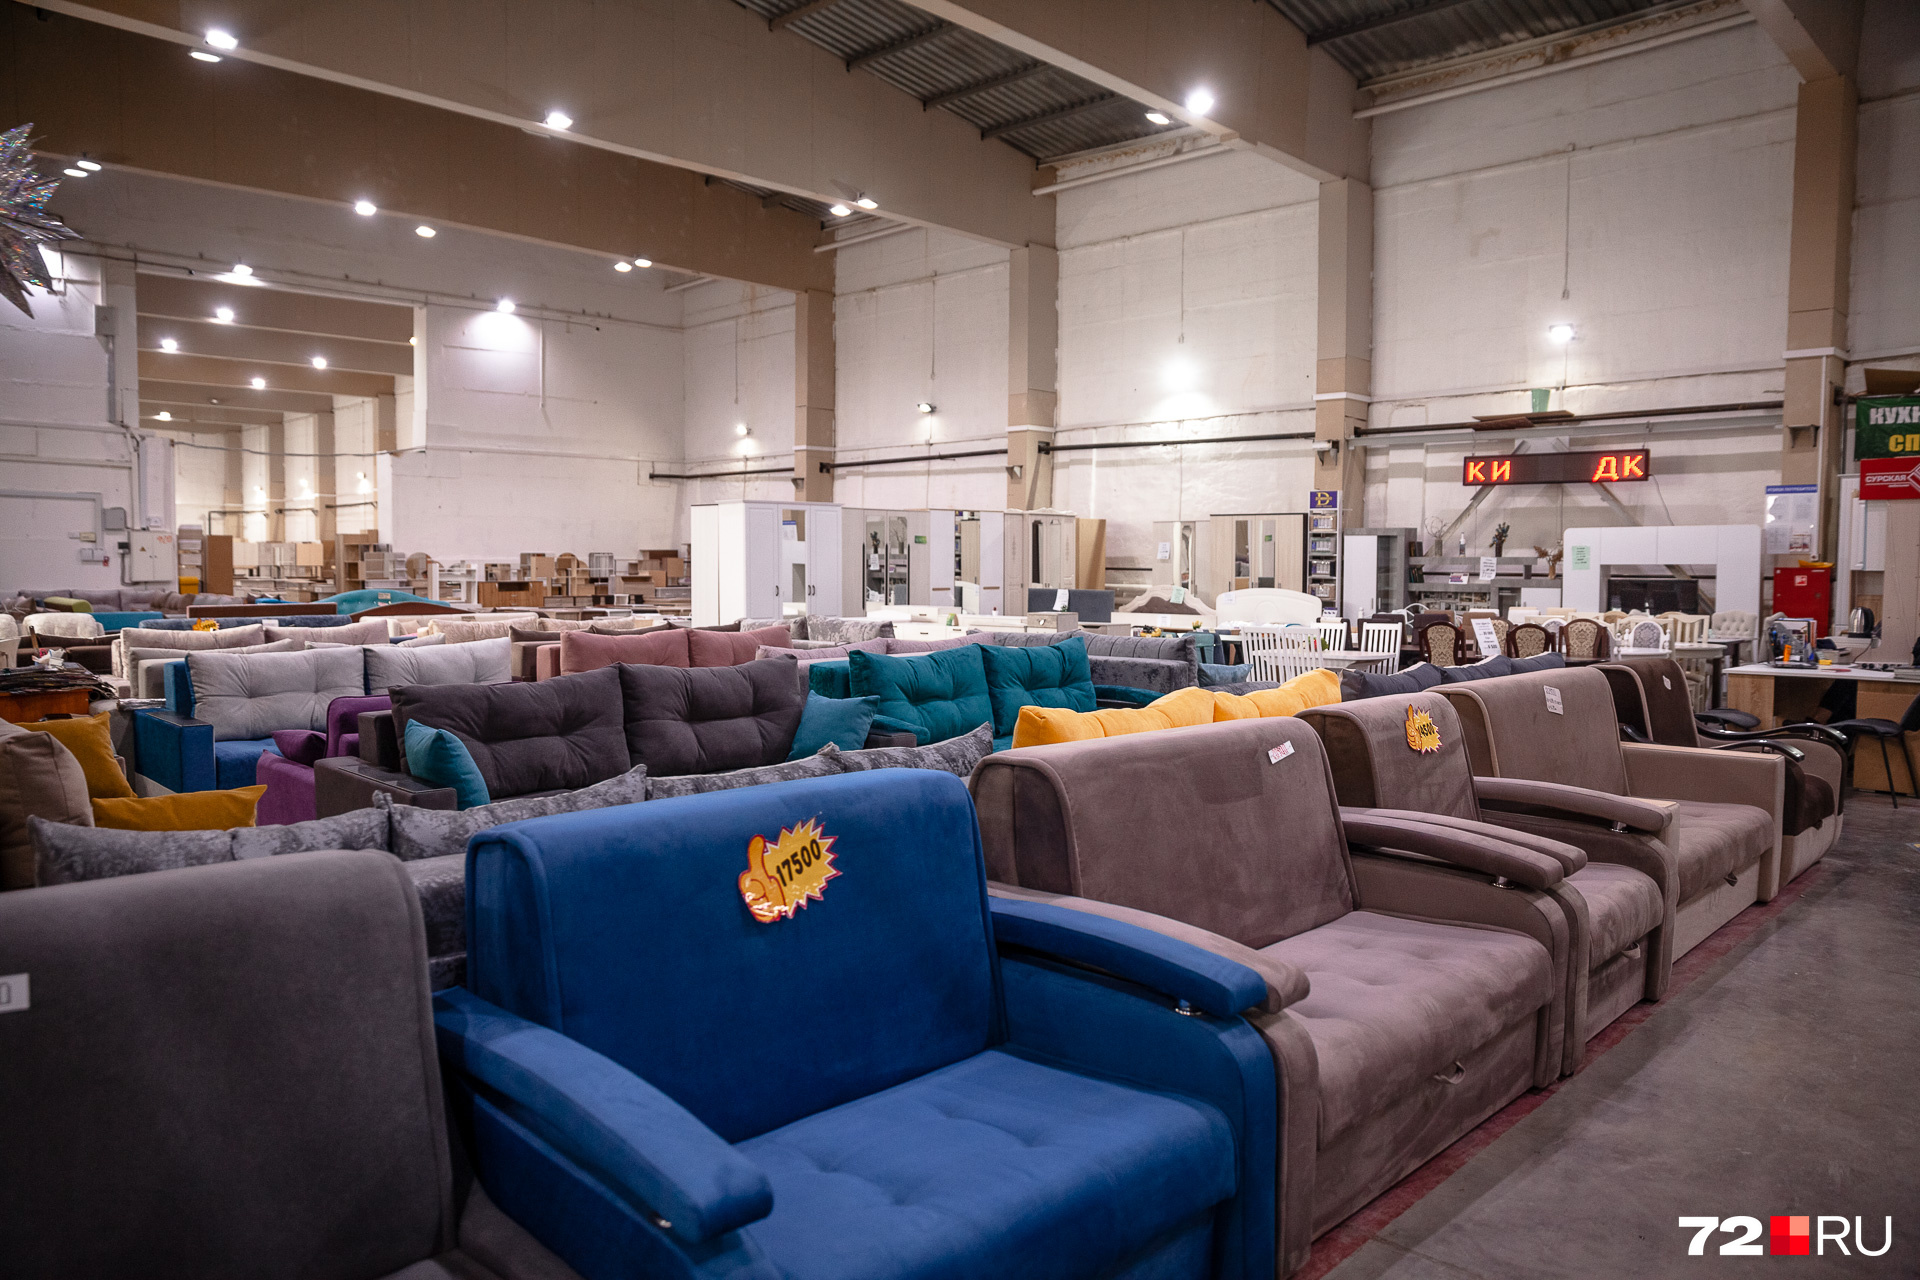 На рынке есть и огромный павильон с мебелью, где можно купить диван за <nobr class="_">15 тысяч</nobr> рублей